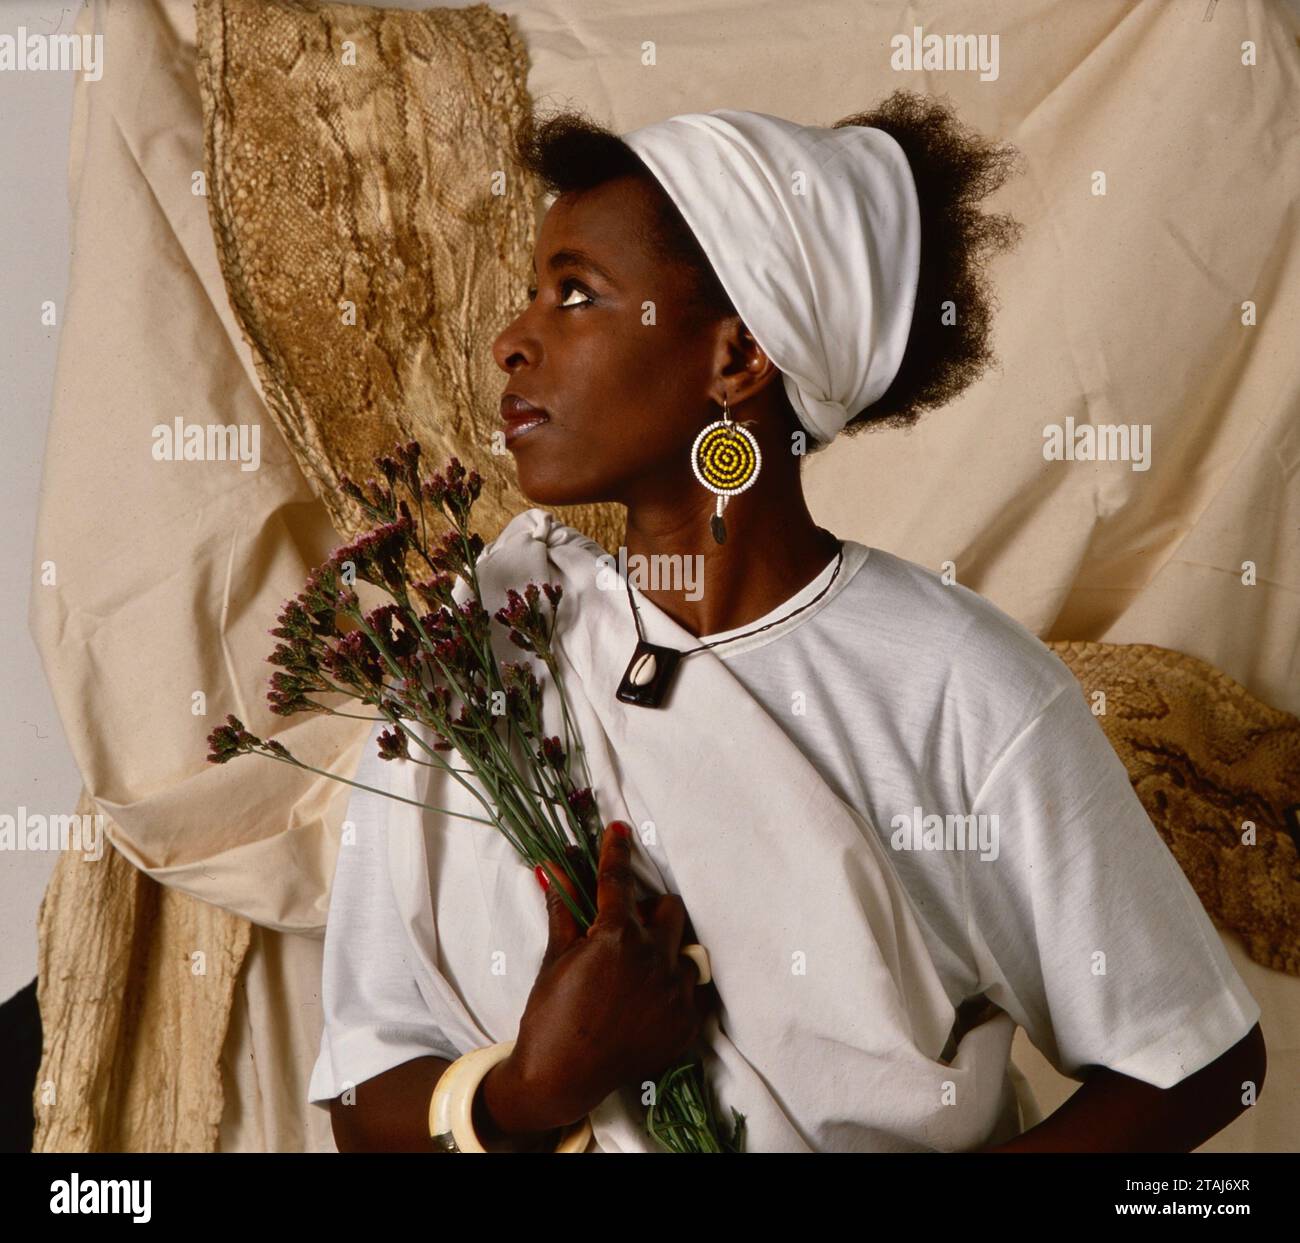 « Grace » sud-africaine, une jeune femme qui brille une lumière dans un temps de ténèbres. Yeoville, Johannesburg Gauteng, Afrique du Sud 1989. De la collection - Afrique du Sud années 1980 - Archives photographiques Don Minnaar Banque D'Images